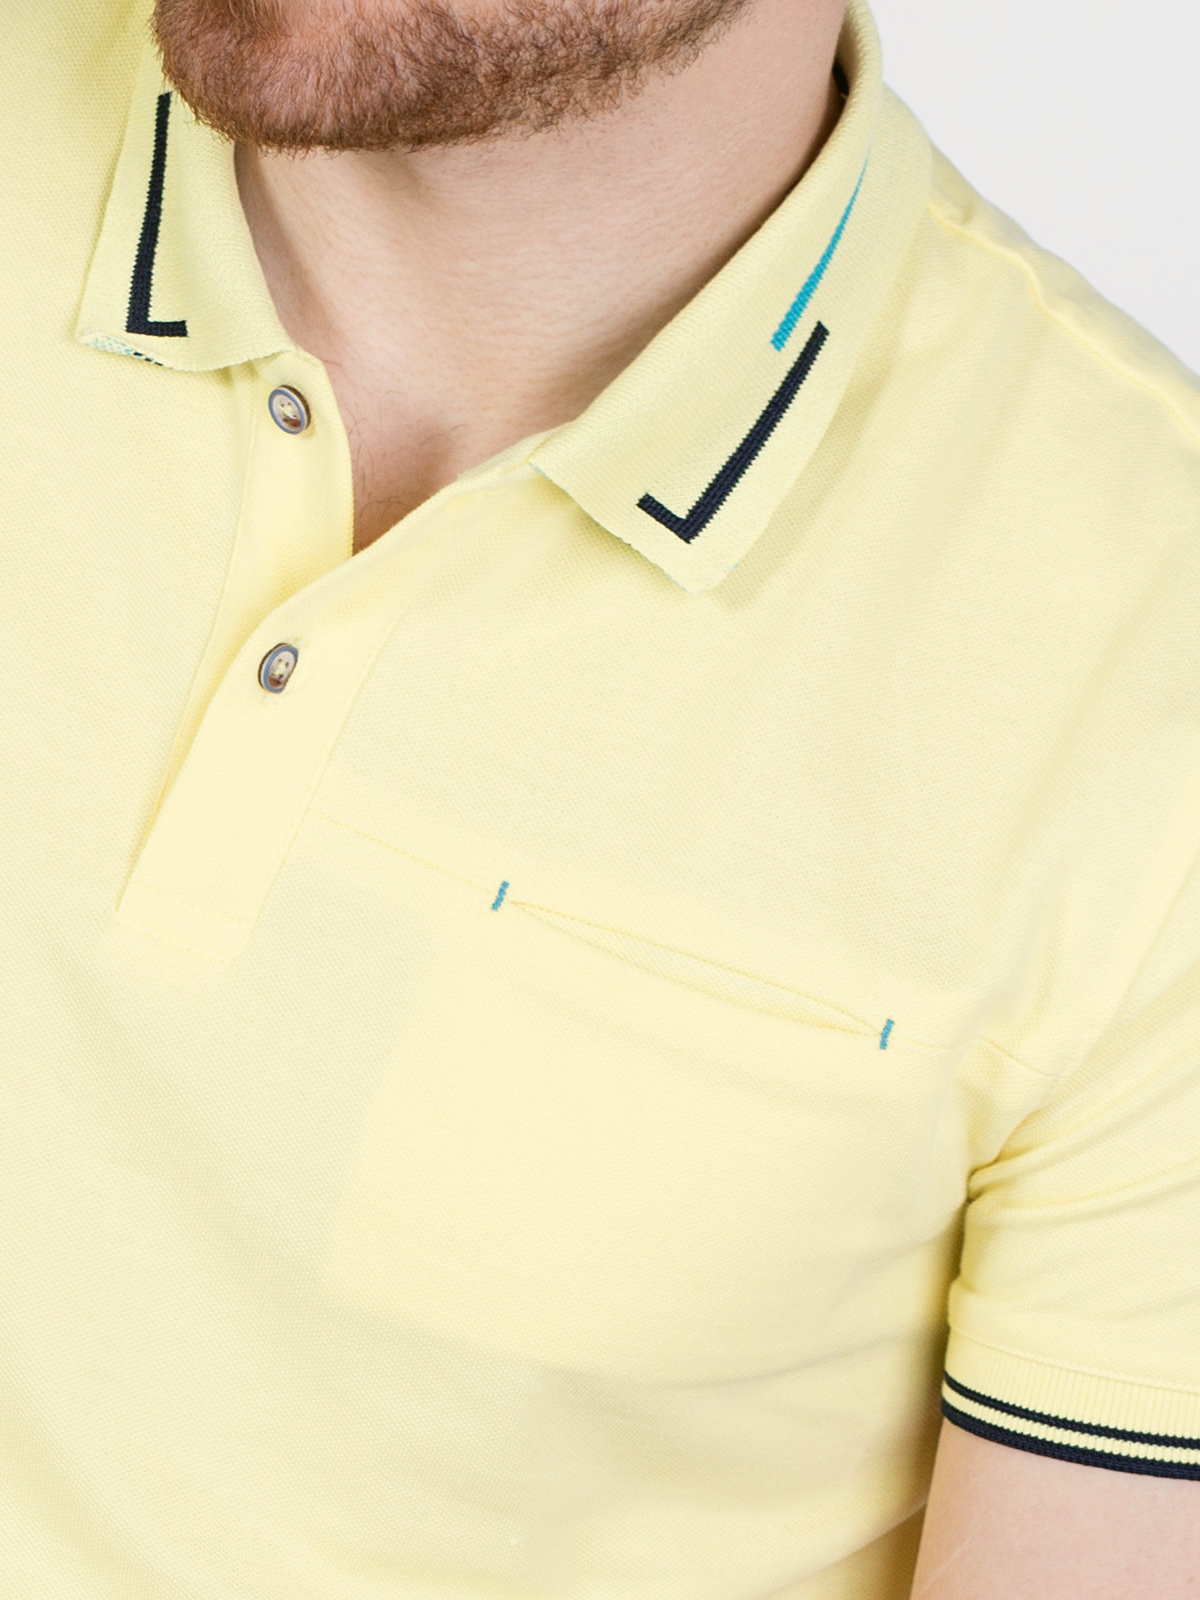 Ανοιχτό κίτρινη μπλούζα με χρωματιστά σ - 93405 € 21.93 img2